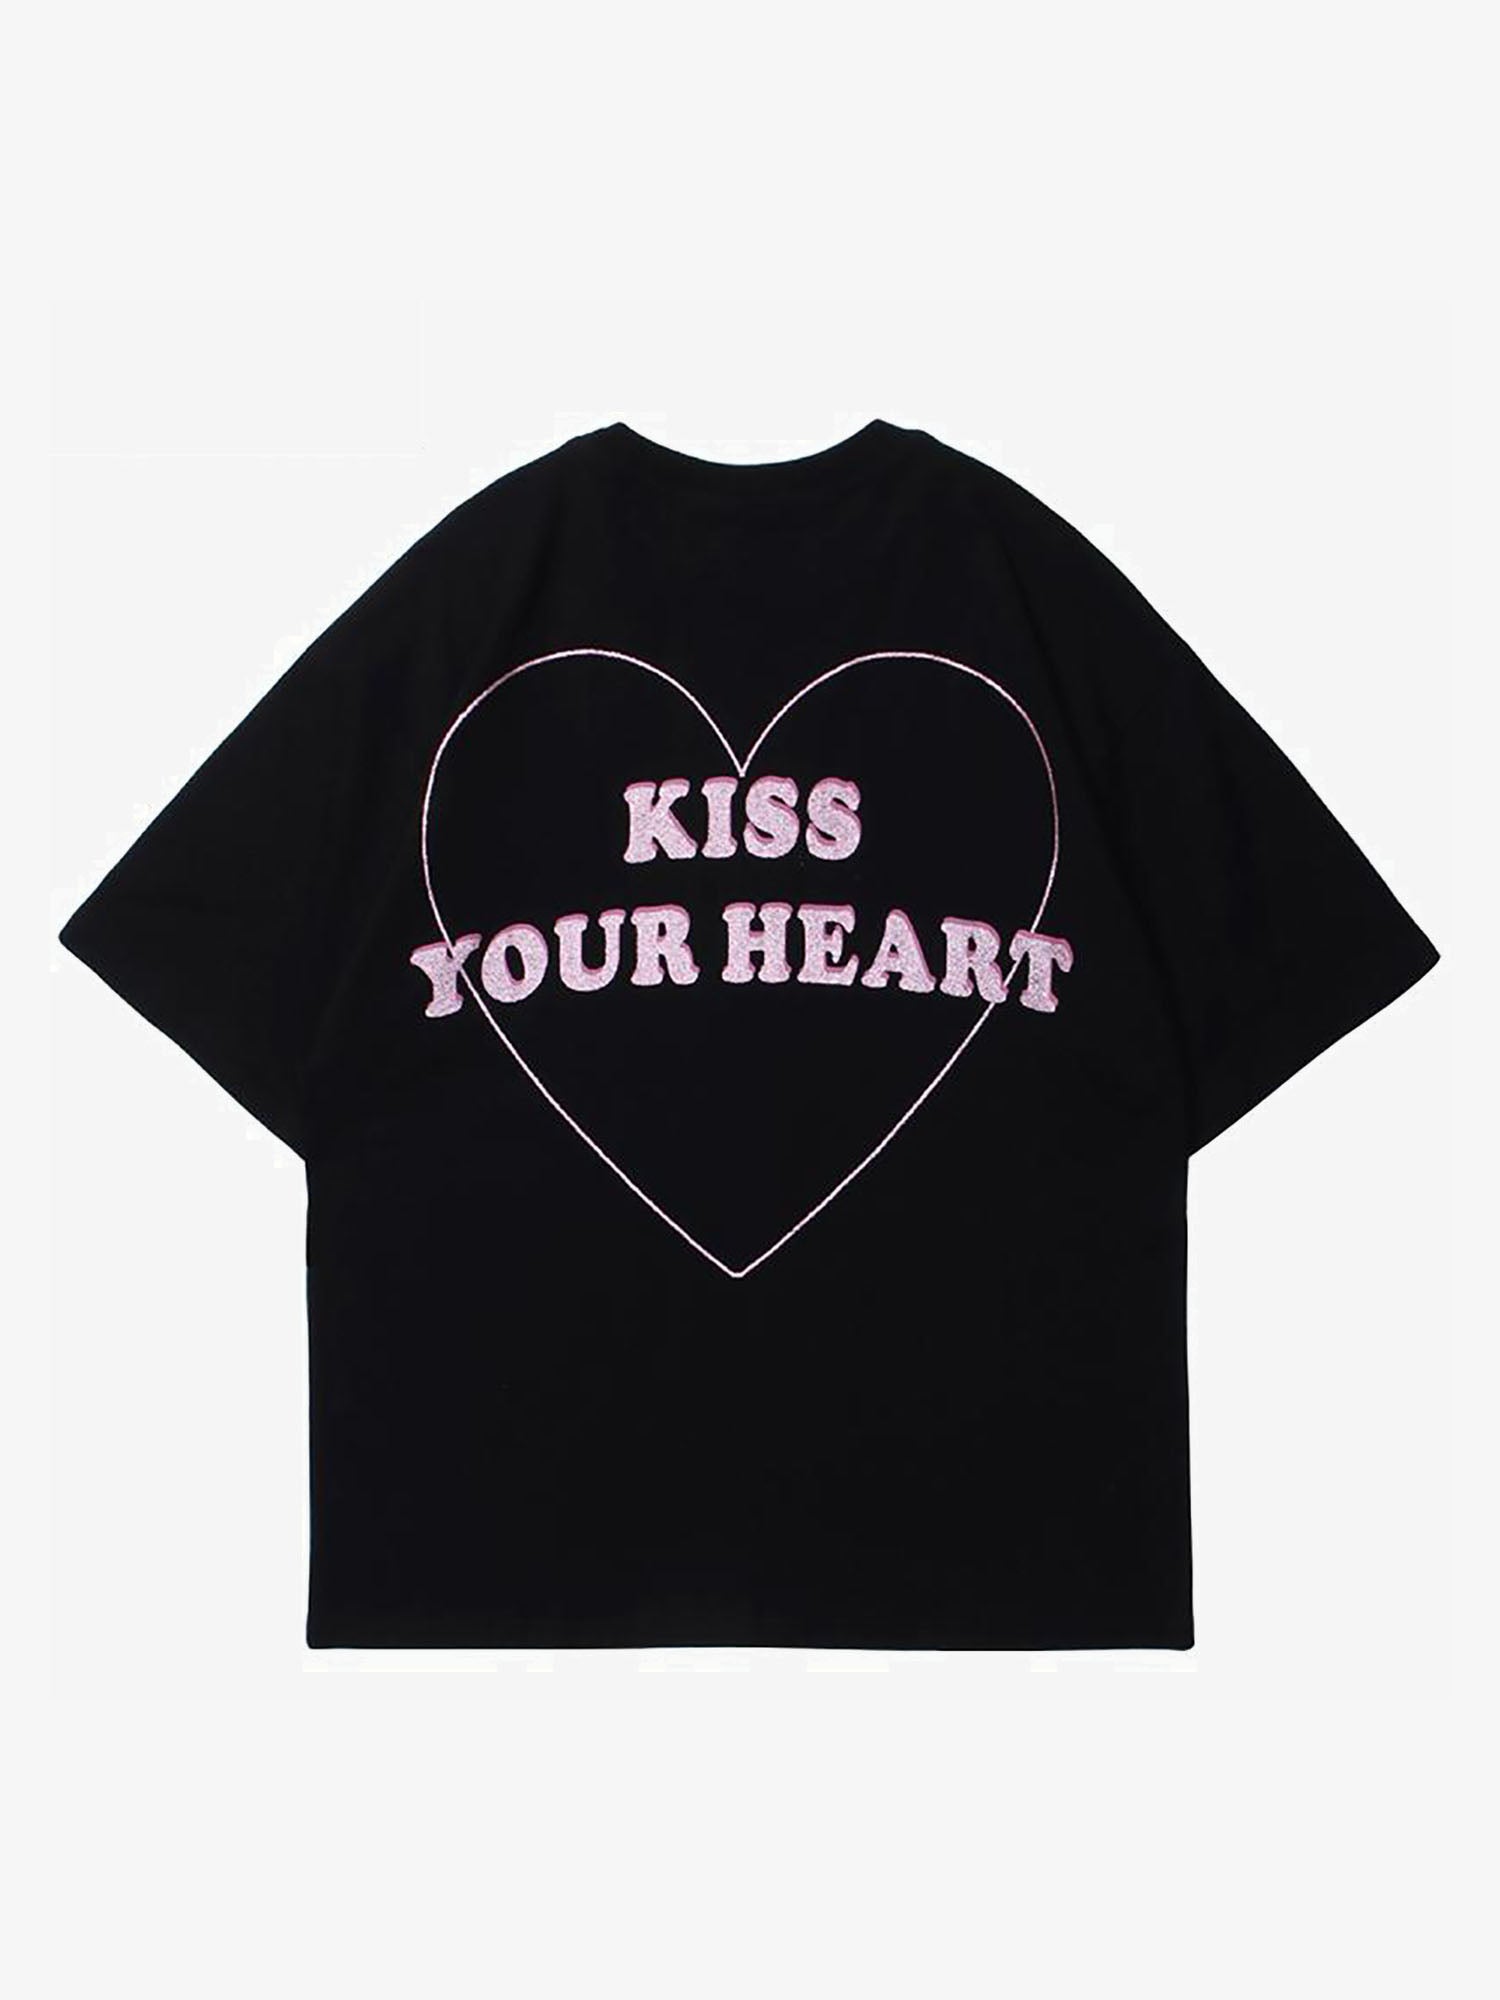 JUSTNOTAG T-shirt a manica corta con lettere a forma di mucca a forma di cuore